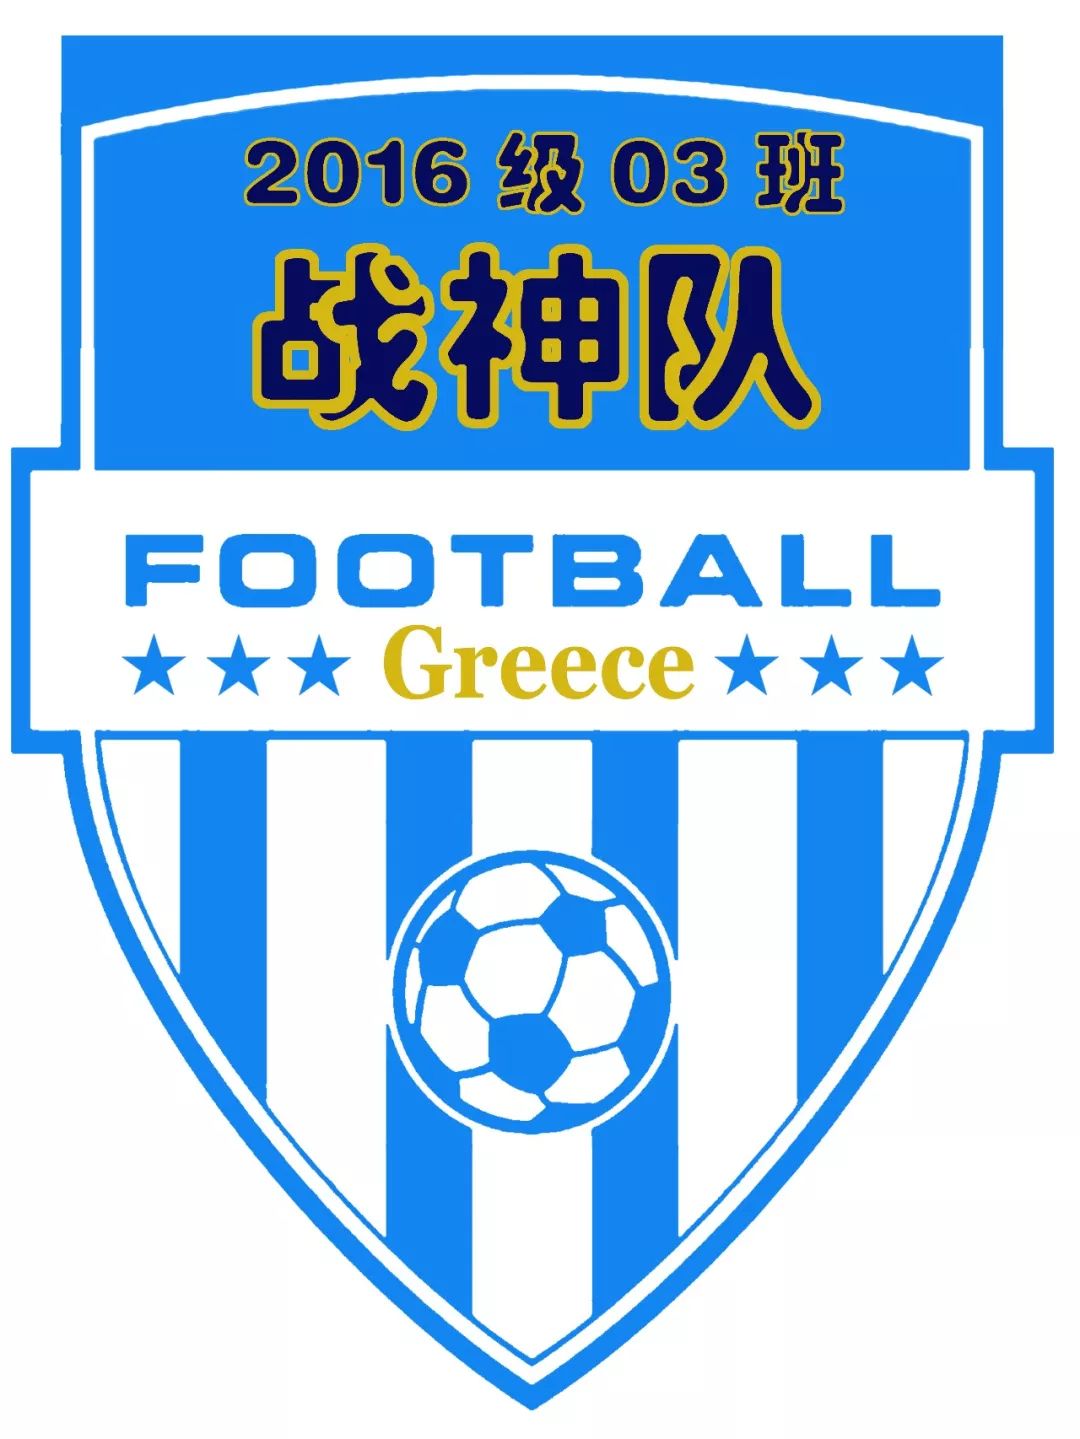 班级足球队logo设计图片